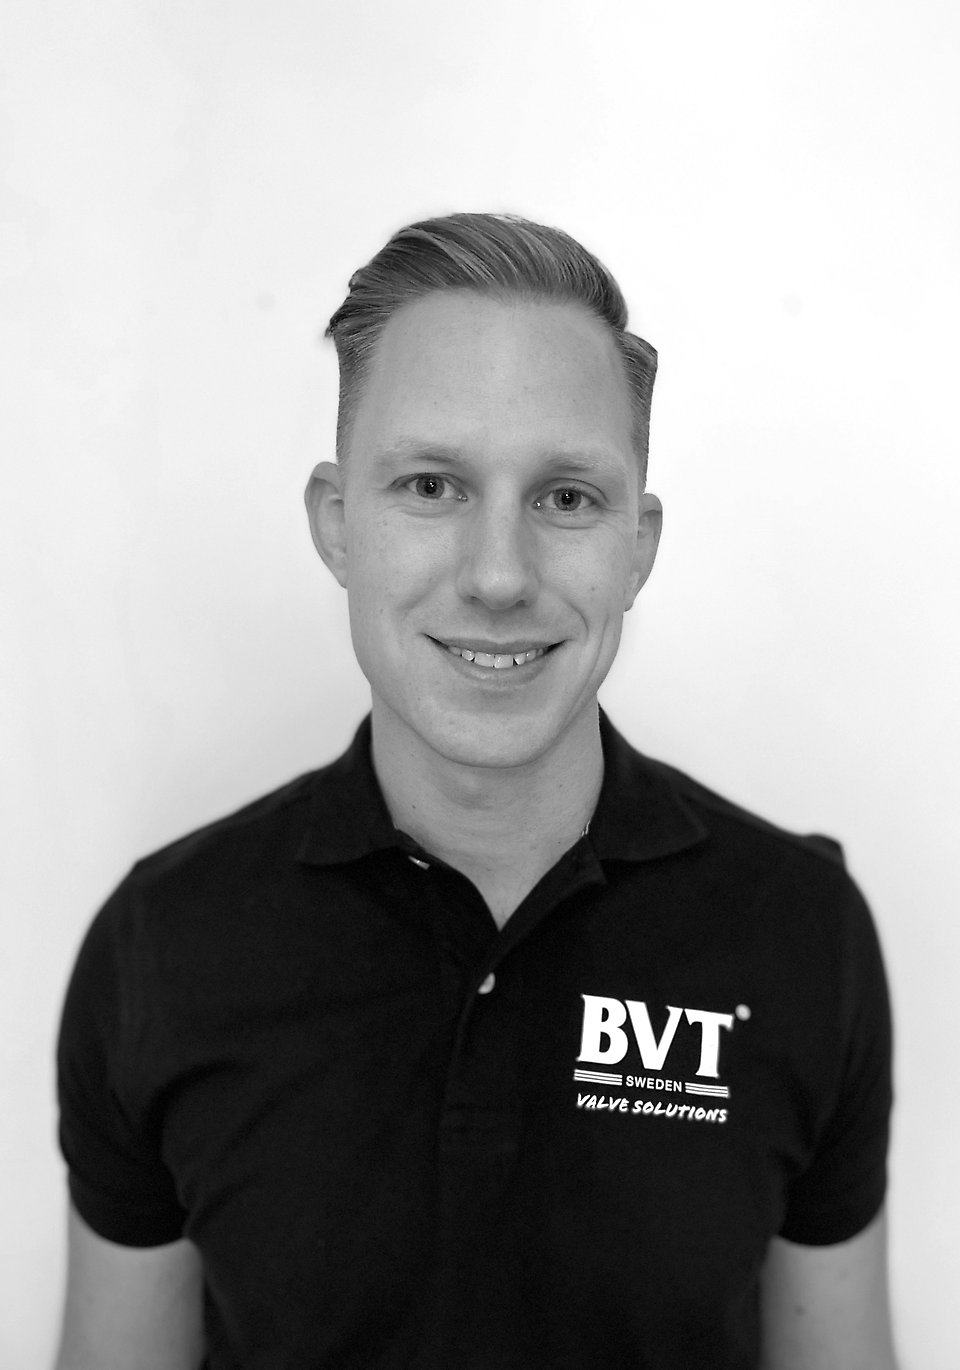 Porträttbild av teknisk säljare från Säffleföretaget BVT Sweden